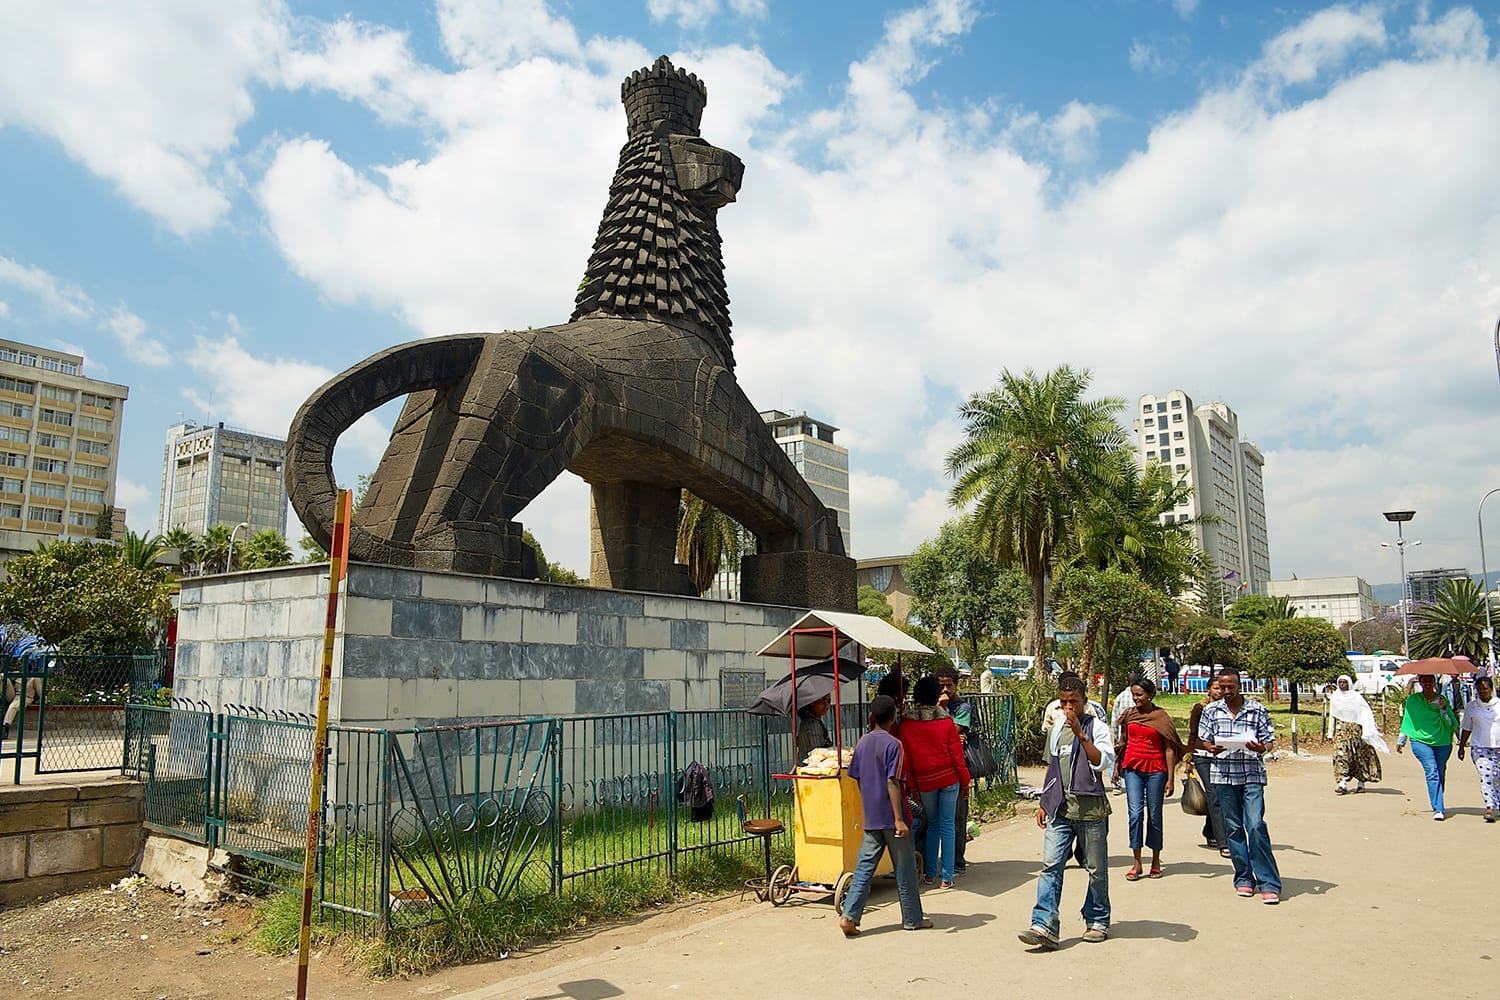 Άγνωστοι περπατούν στον δρόμο δίπλα στο εμβληματικό άγαλμα του λιονταριού του Ιούδα στην Αντίς Αμπέμπα της Αιθιοπίας.